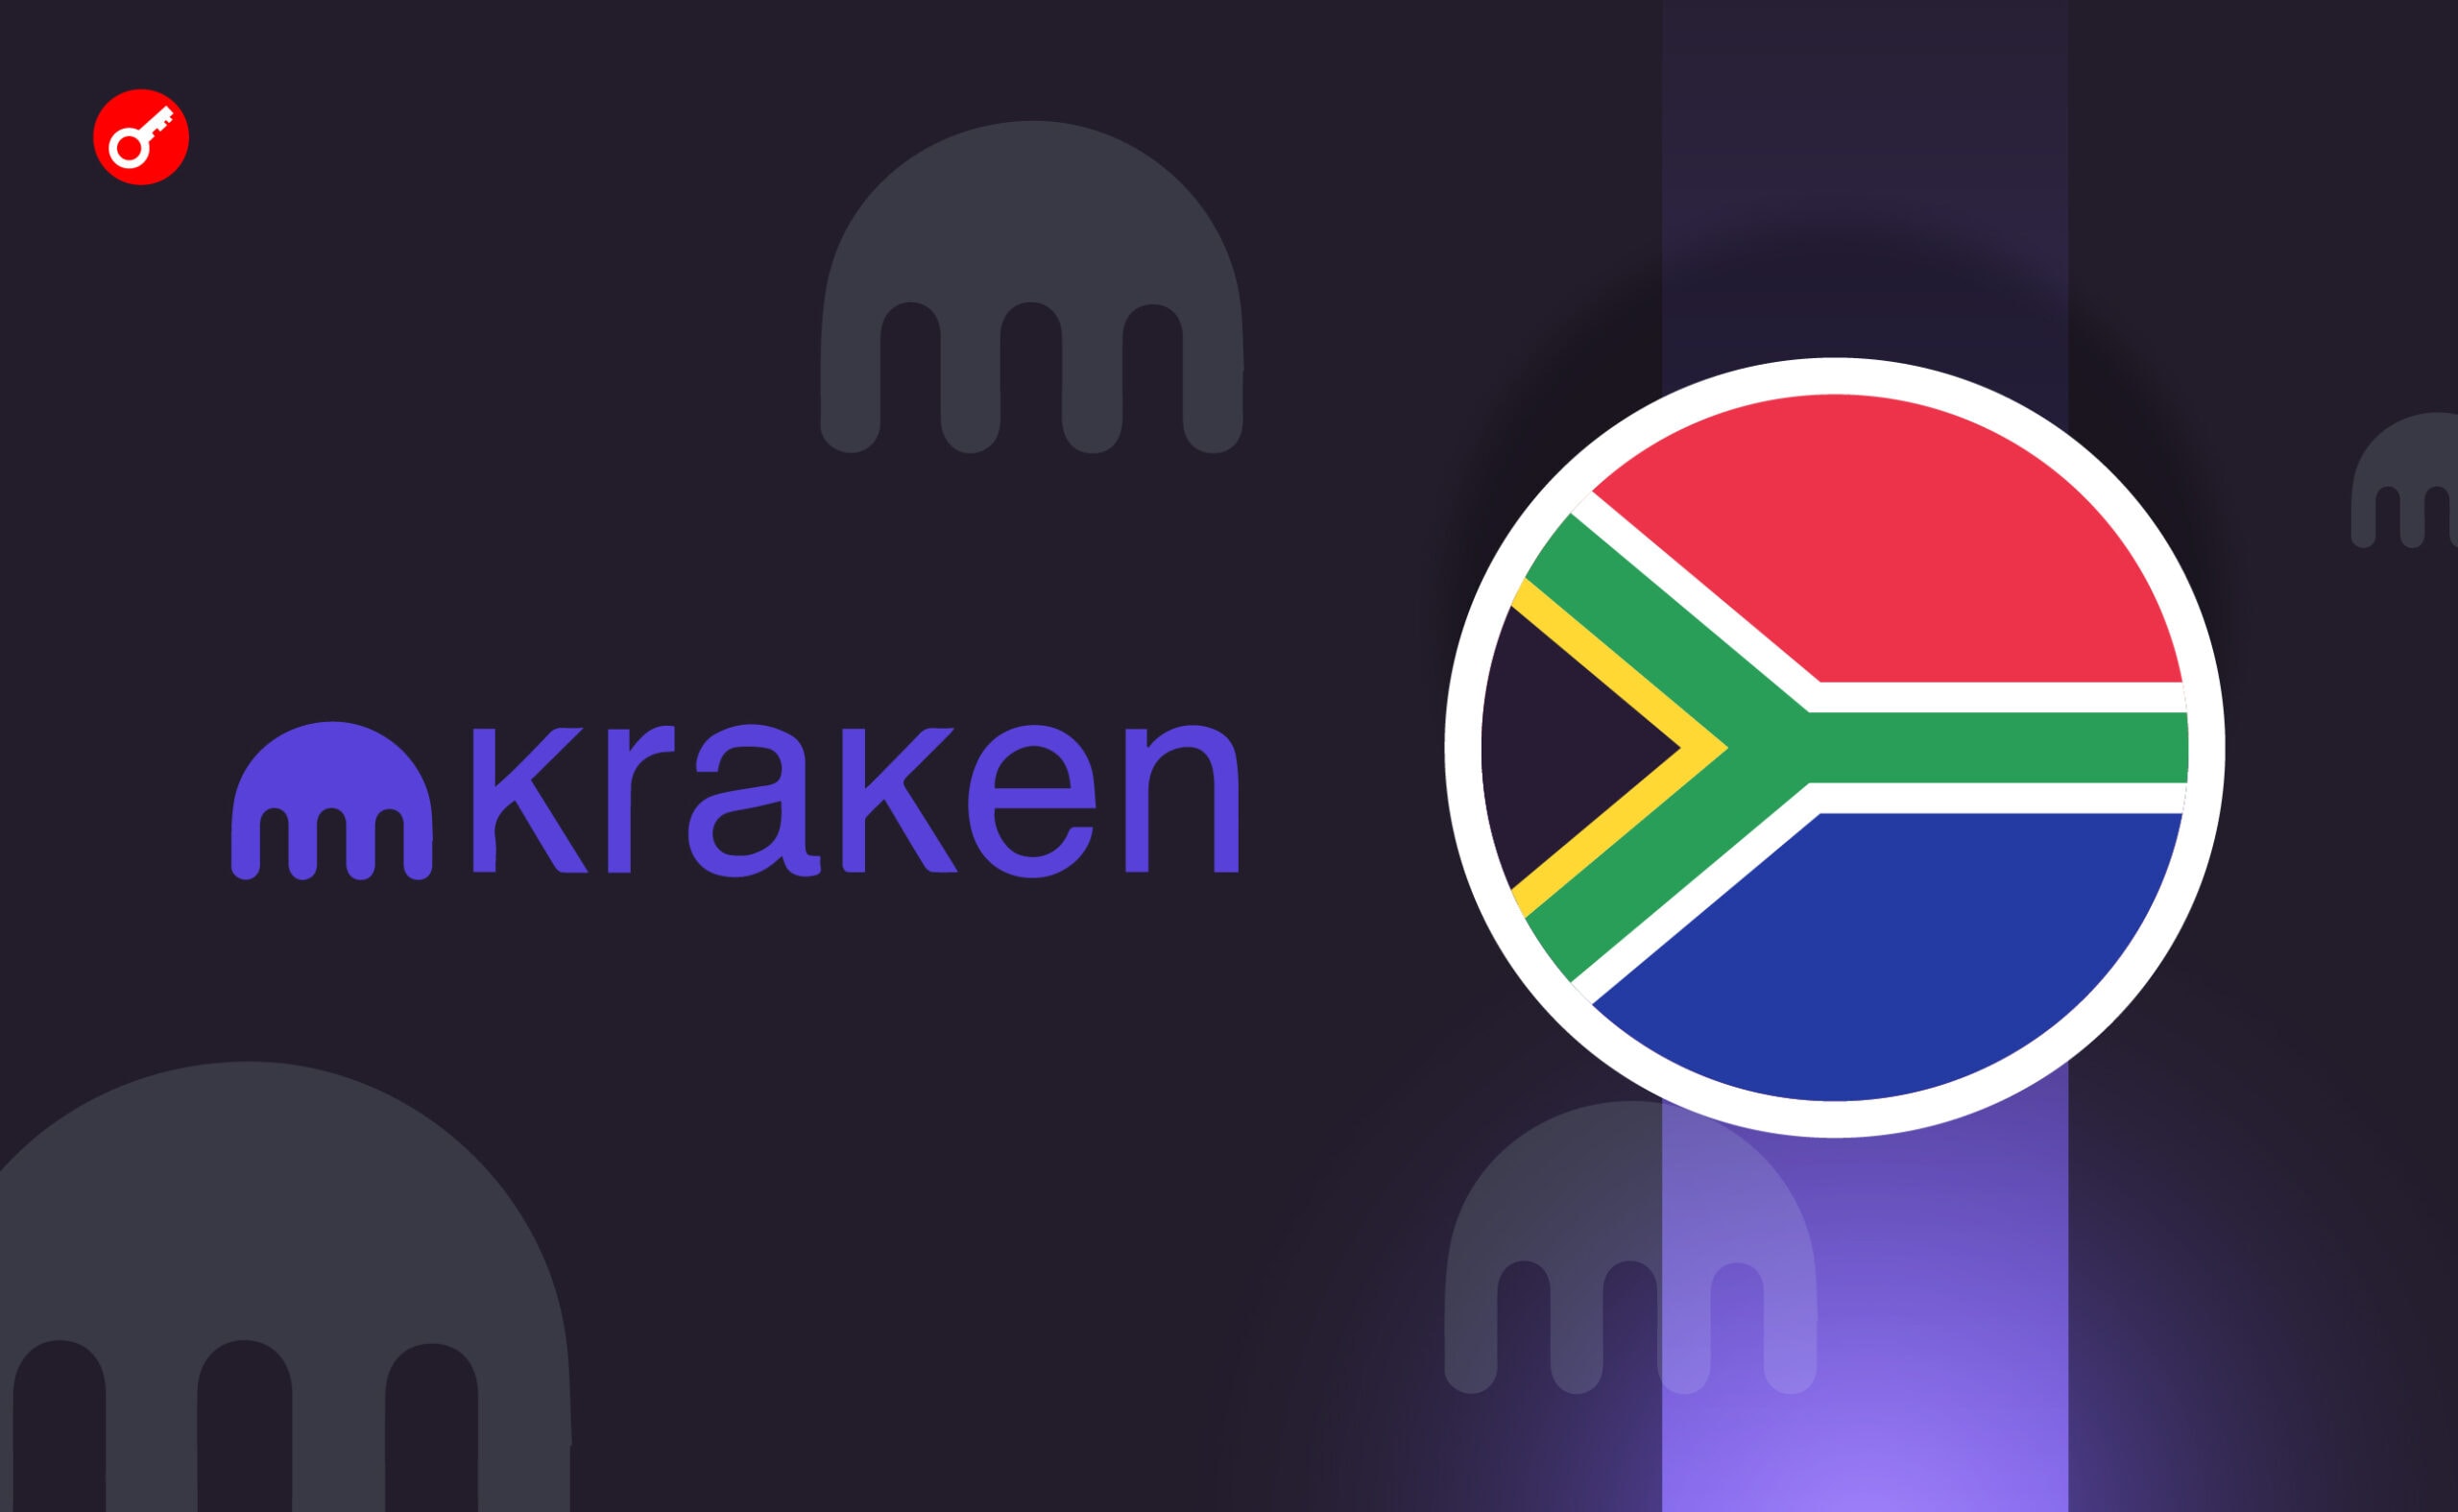 Криптобиржа Kraken прекратила принимать депозиты от южноафриканцев. Заглавный коллаж новости.